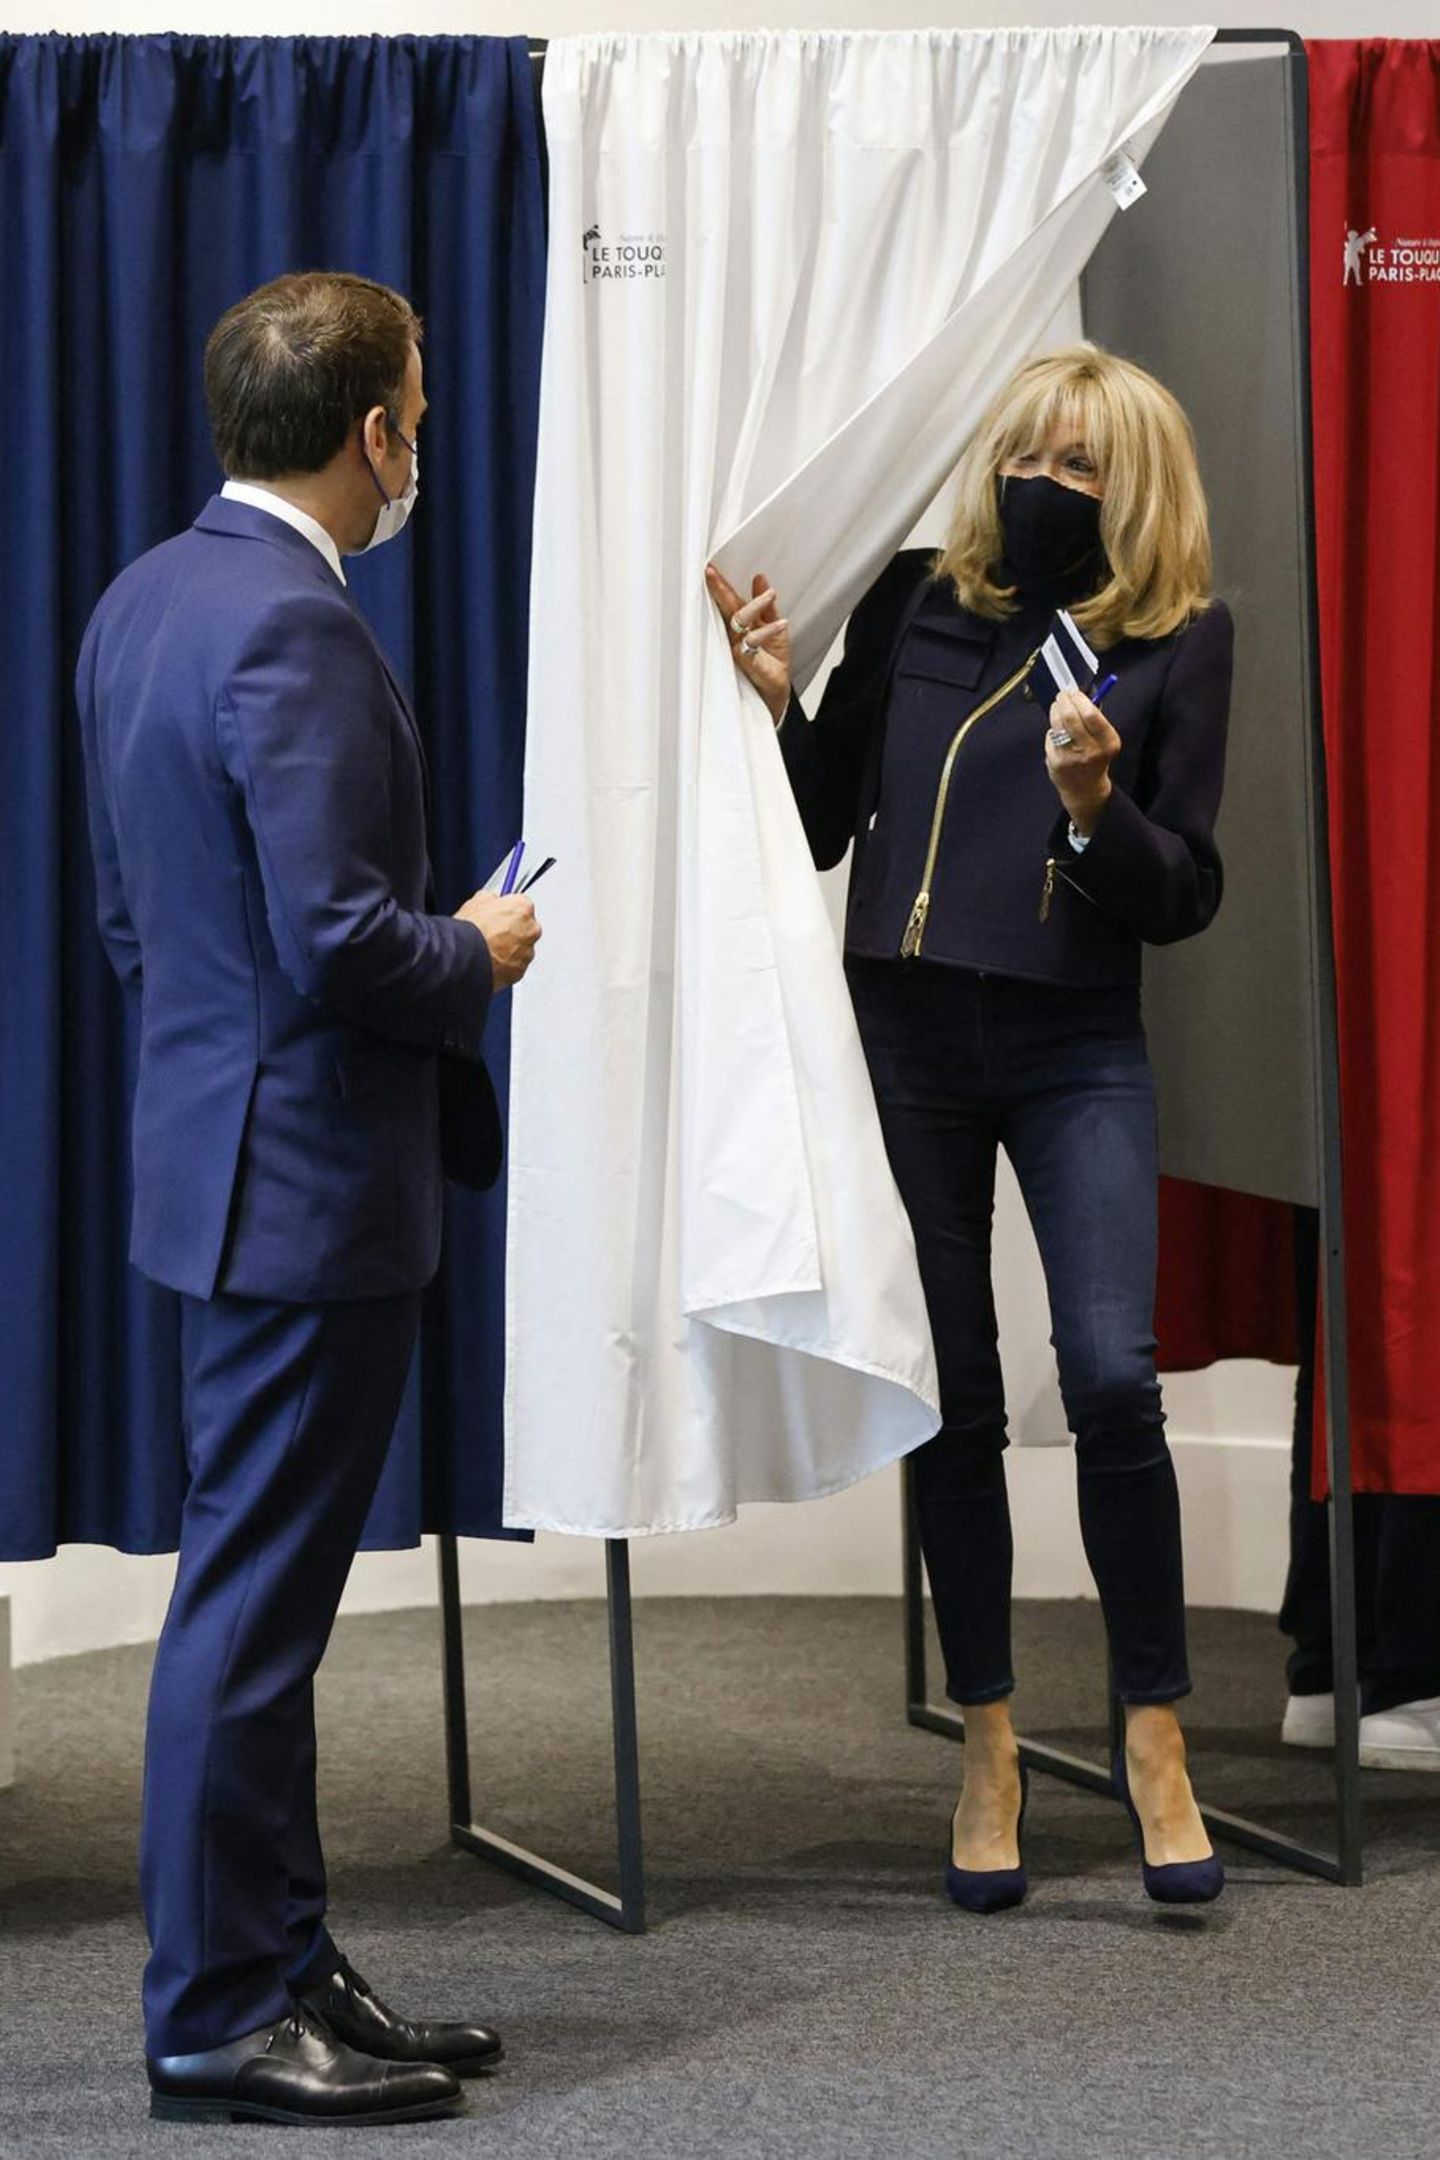 Zu den Regionalwahlen Ende Juni zeigt sich Brigitte Macron stilsicher wie immer. Sie punktet an diesem Tag mit ihrem monochromen Outfit in Dunkelblau. Langweilig? Von wegen! Mehr als eine klassische Skinny Jeans, eine coole Jacke mit Reißverschlussdetail und ein Paar High Heels braucht es manchmal gar nicht, um perfekt gekleidet zu sein! Mit dieser Idee ist sie allerdings nicht alleine ... 